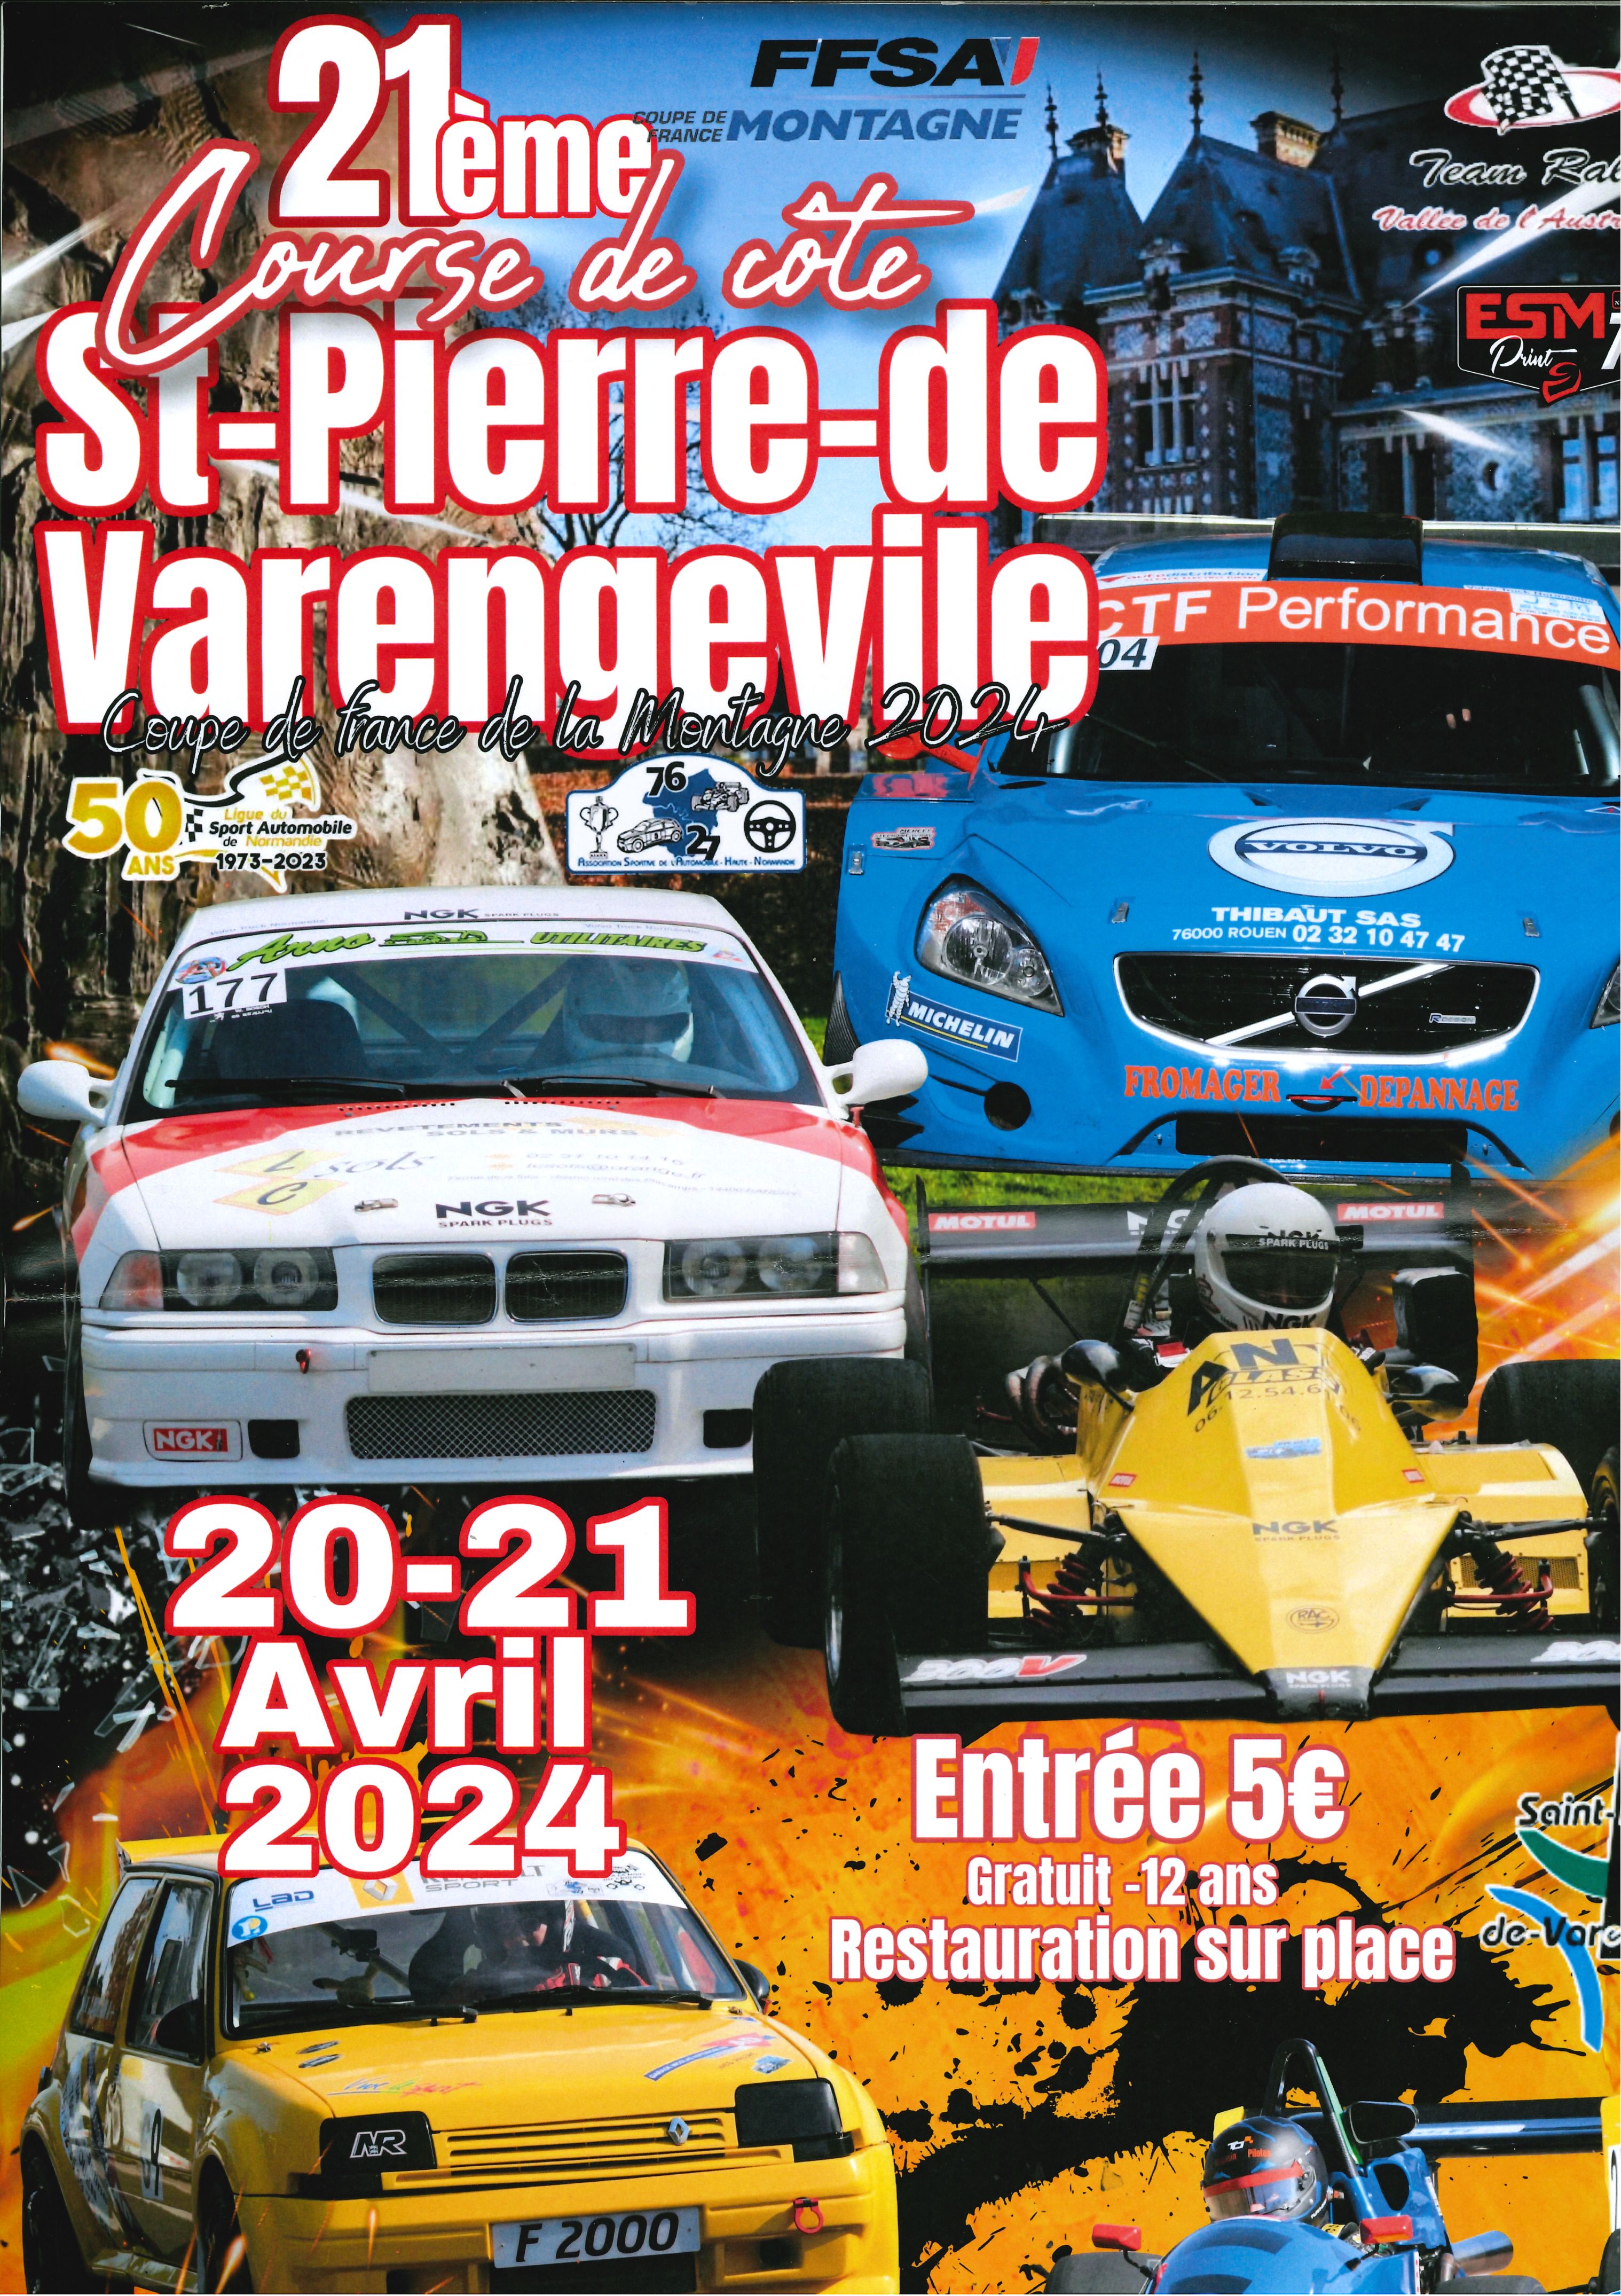 21ème course de cote à Saint-Pierre-de-Varengeville